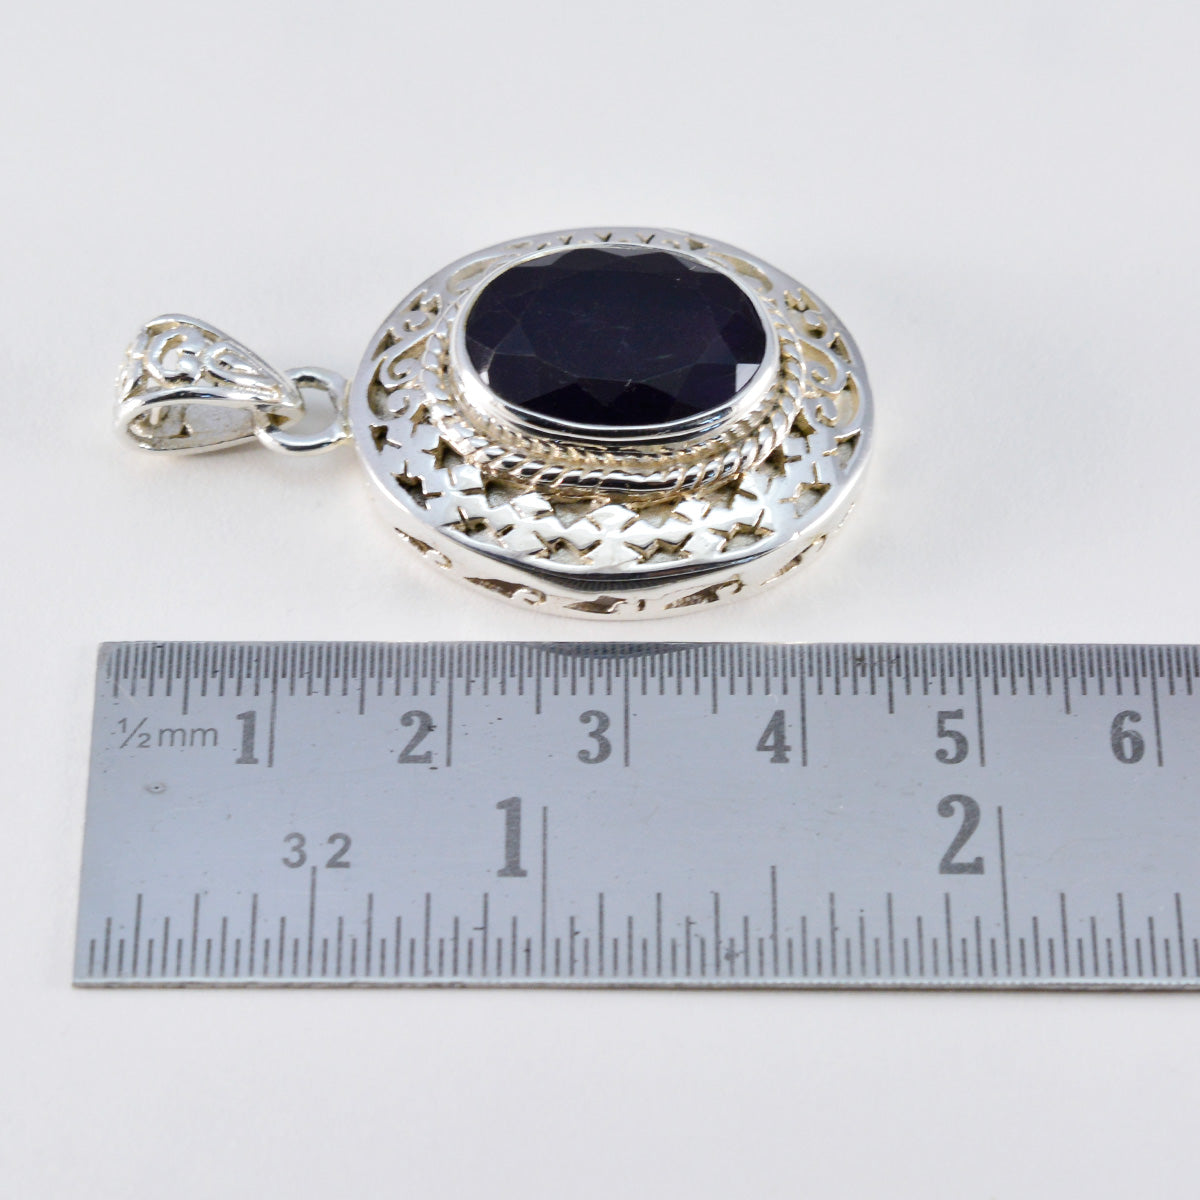 Riyo fit piedra preciosa ovalada facetada amatista púrpura colgante de plata de ley 993 regalo para cumpleaños